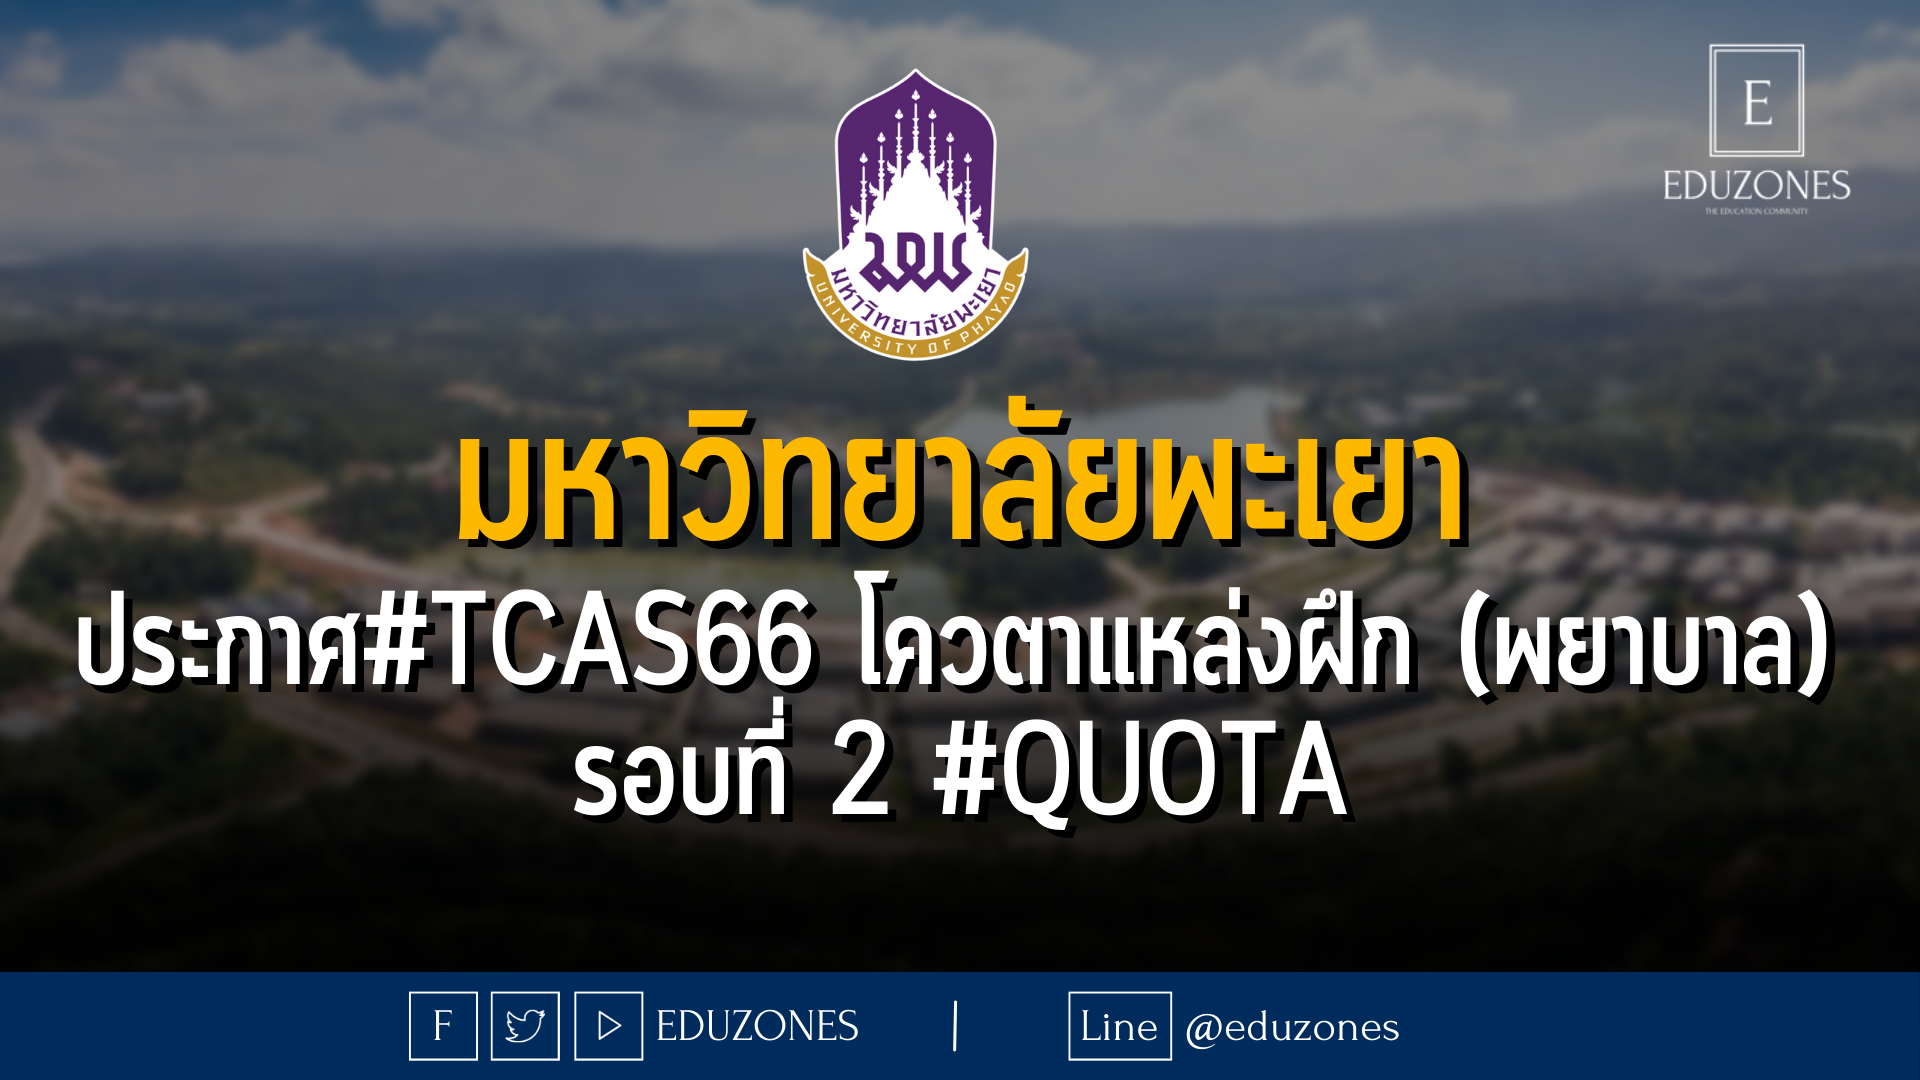 มหาวิทยาลัยพะเยา ประกาศ #TCAS66 หลักสูตรพยาบาลศาสตรบัณฑิต โครงการโควตาแหล่งฝึก รอบที่ 2 #quota - 14 กุมภาพันธ์ - 6 มีนาคม 2566